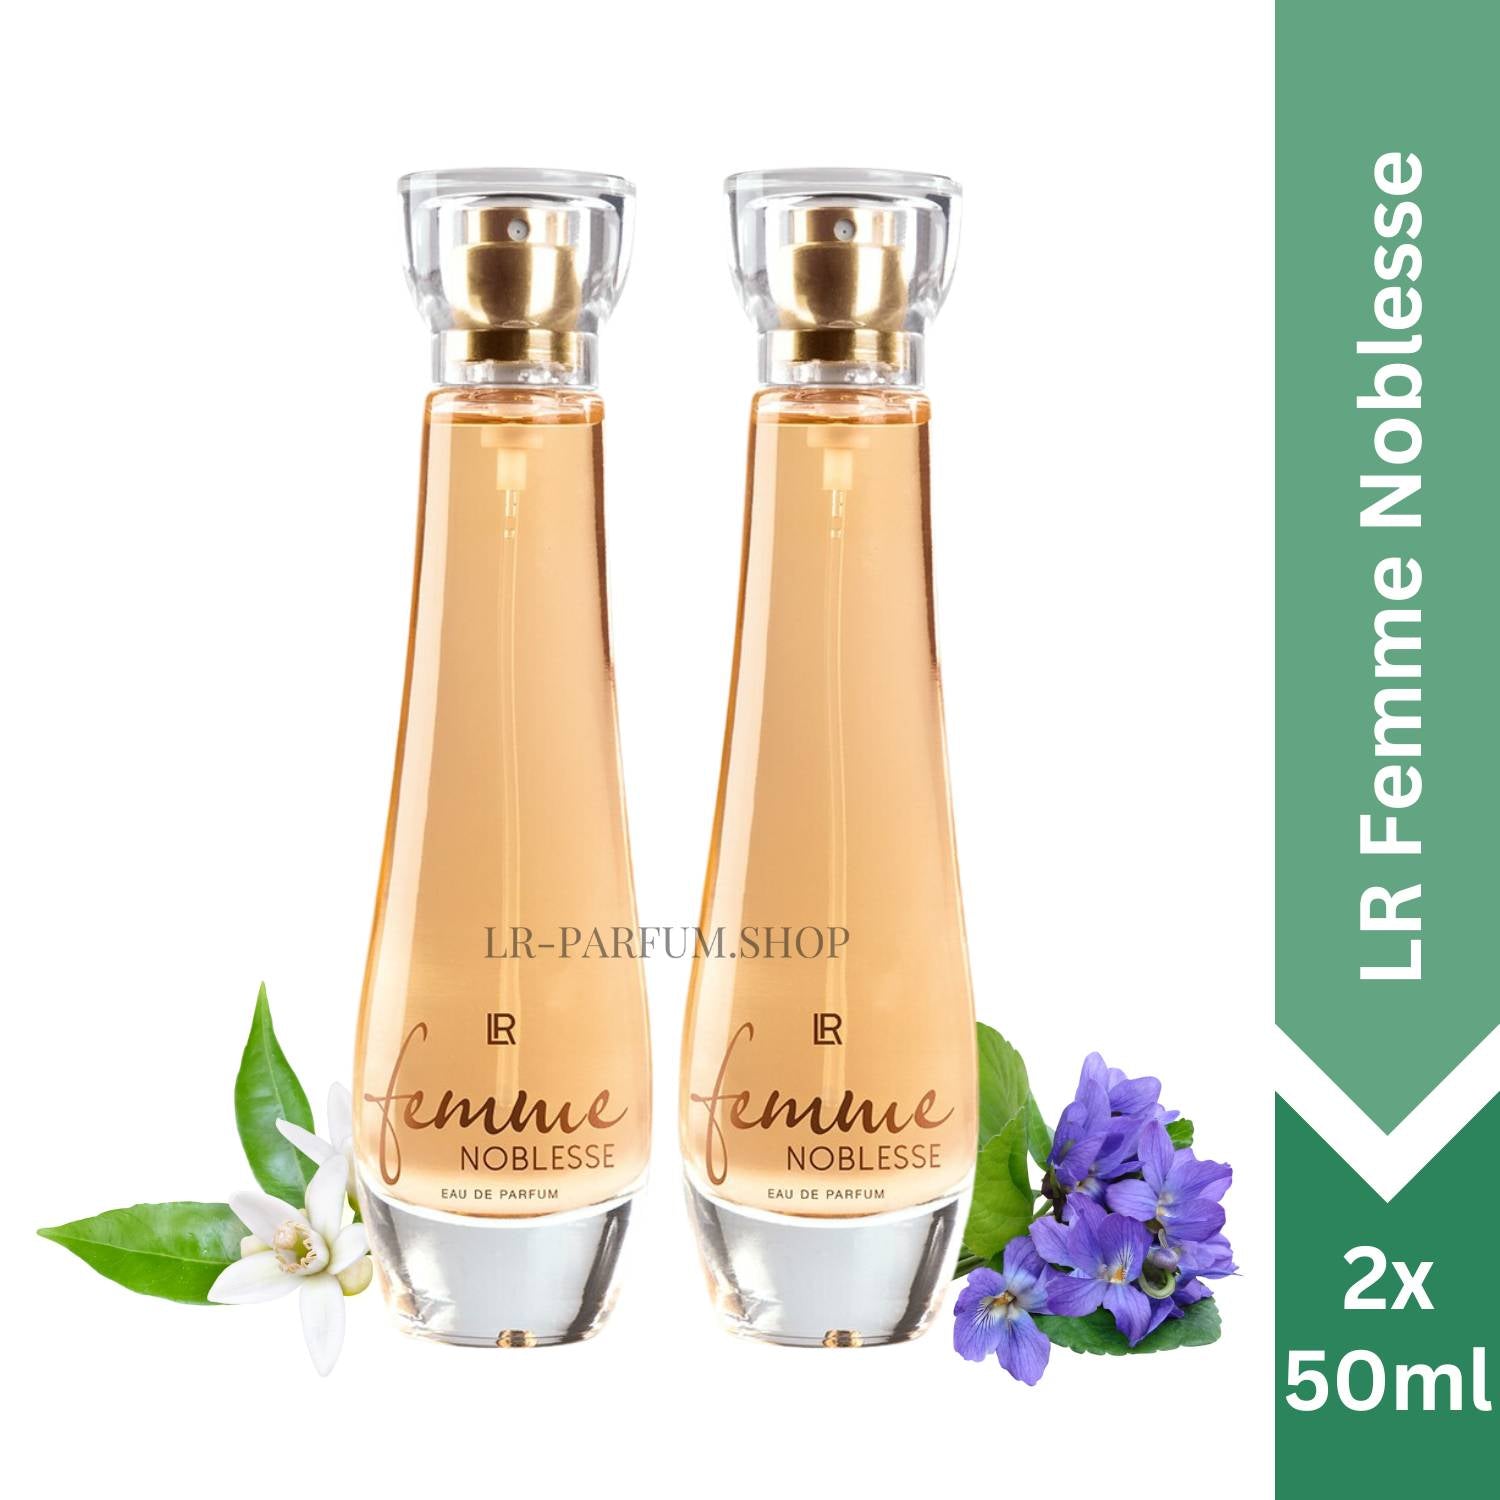 LR Femme Noblesse - Eau de Parfum, 2er Pack (2x 50ml) - LR-Parfum.shop